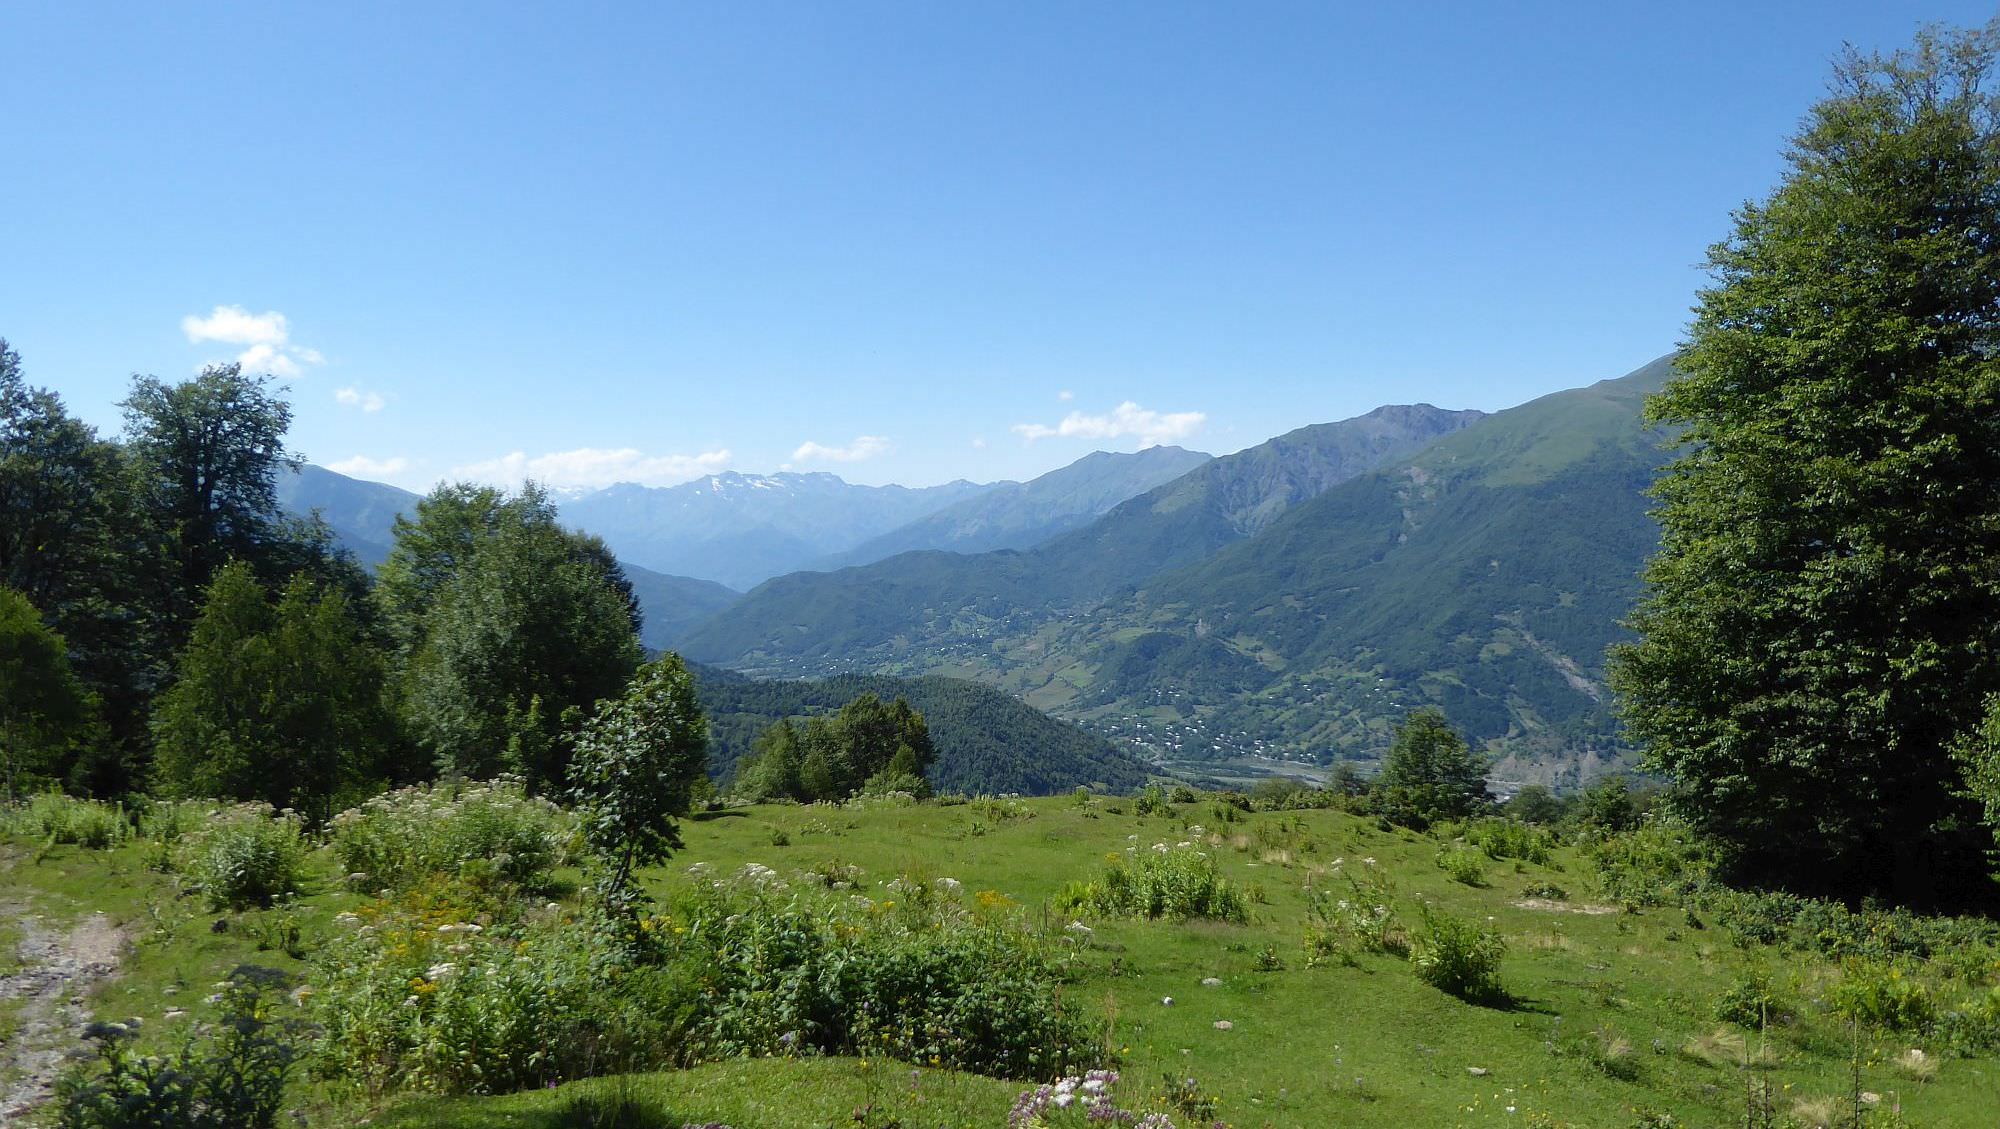 Views of Lower Svaneti